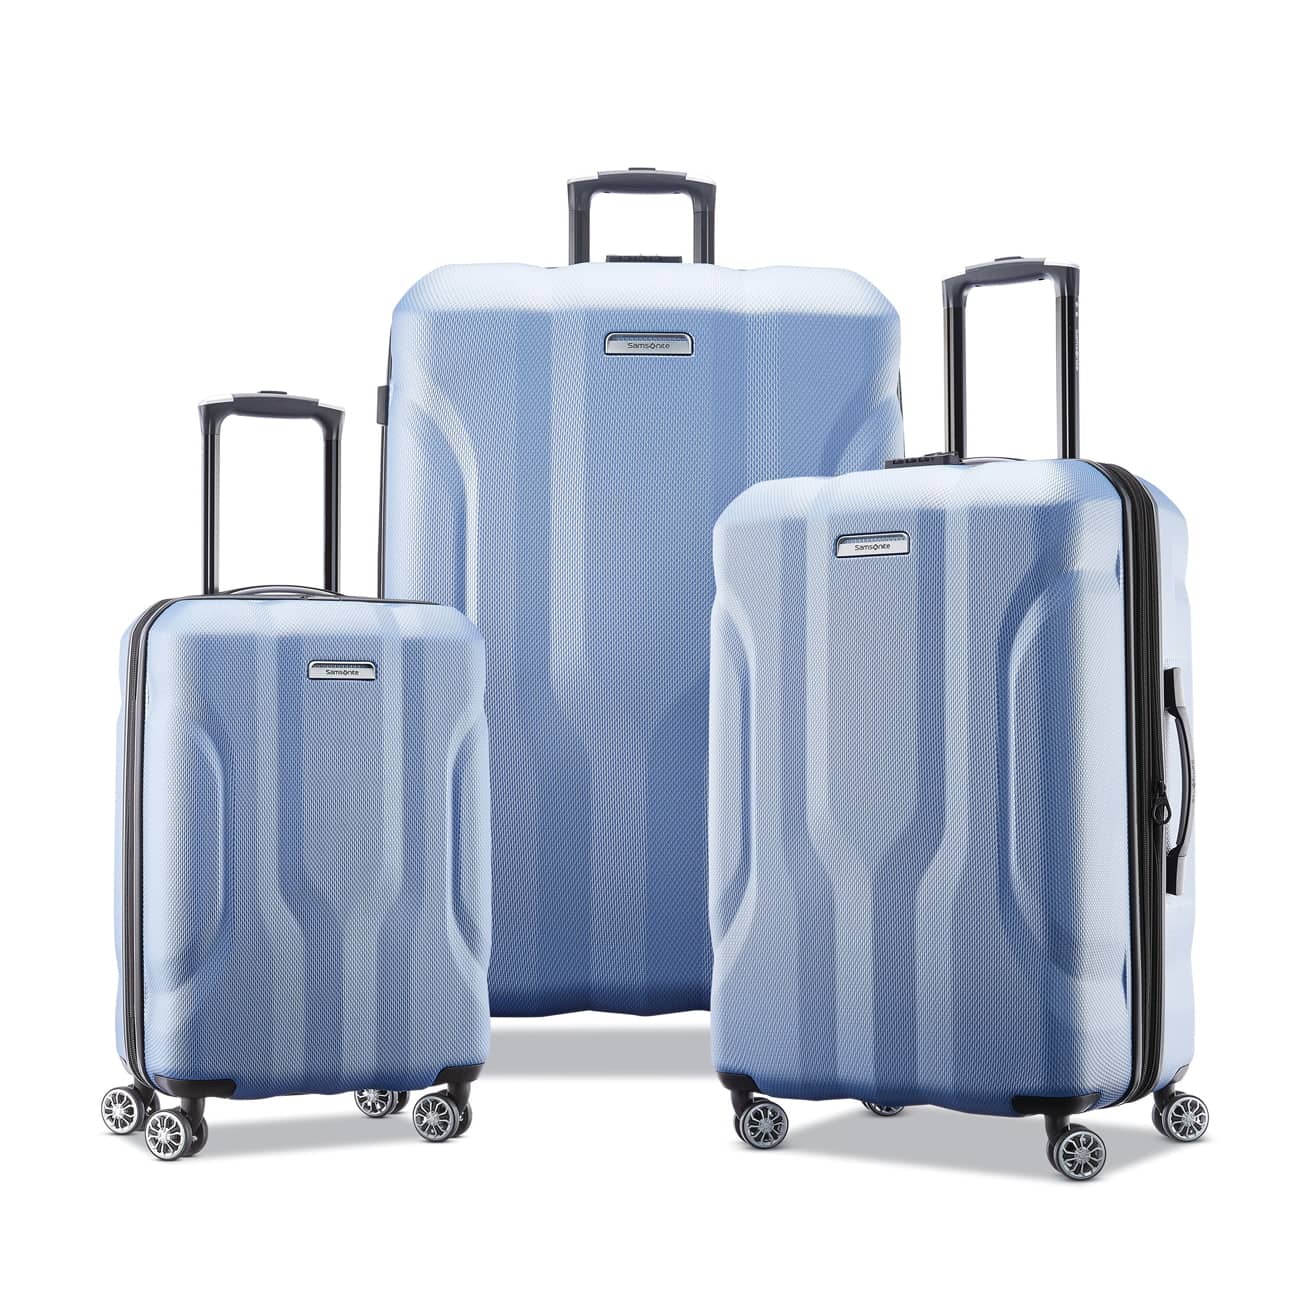 Luggage set on sale